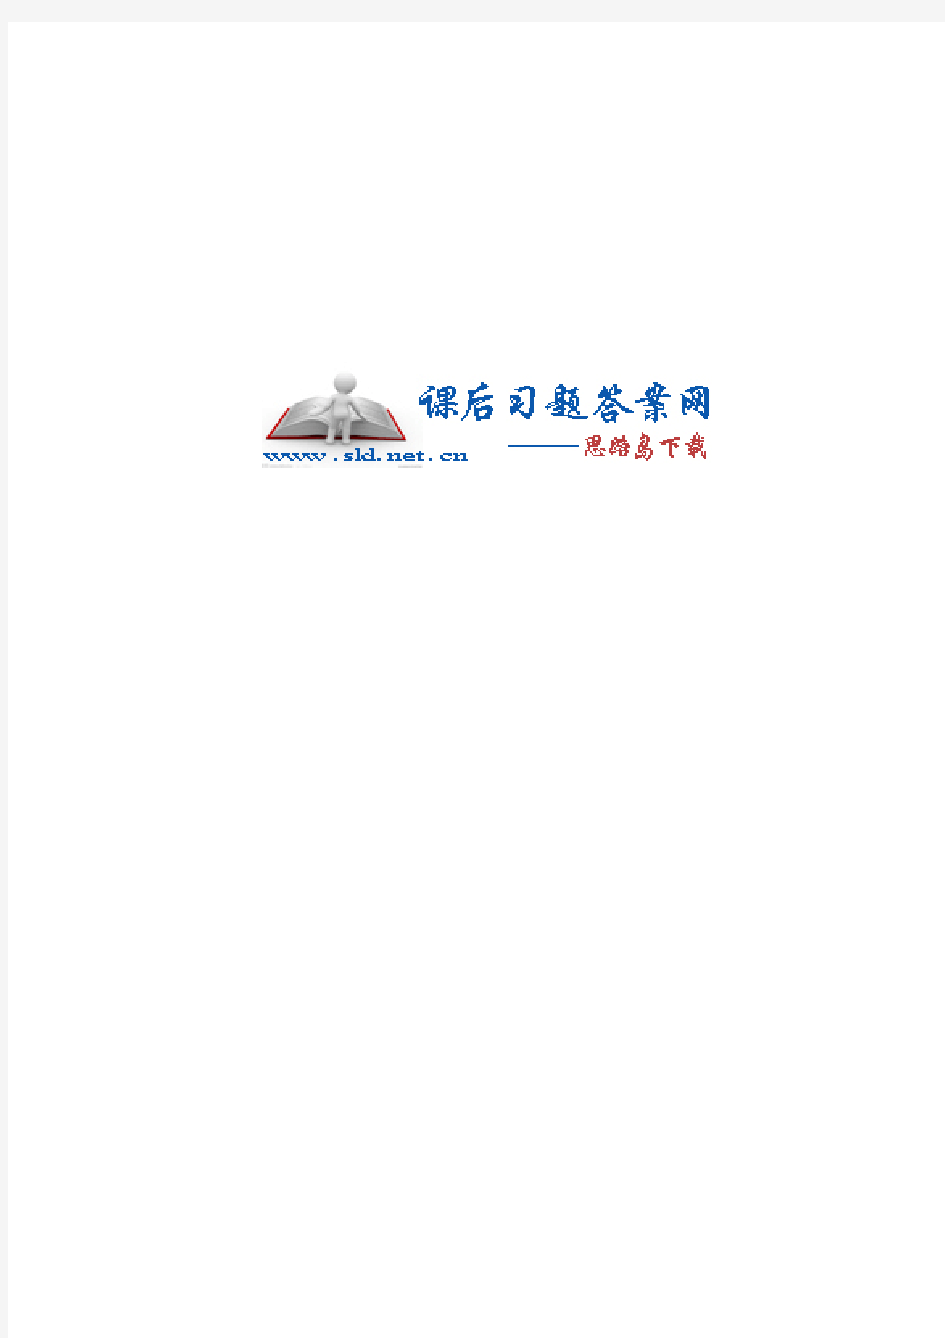 过程流体机械 第二版 (李云 姜培正 著) 化学工业出版社_khdaw